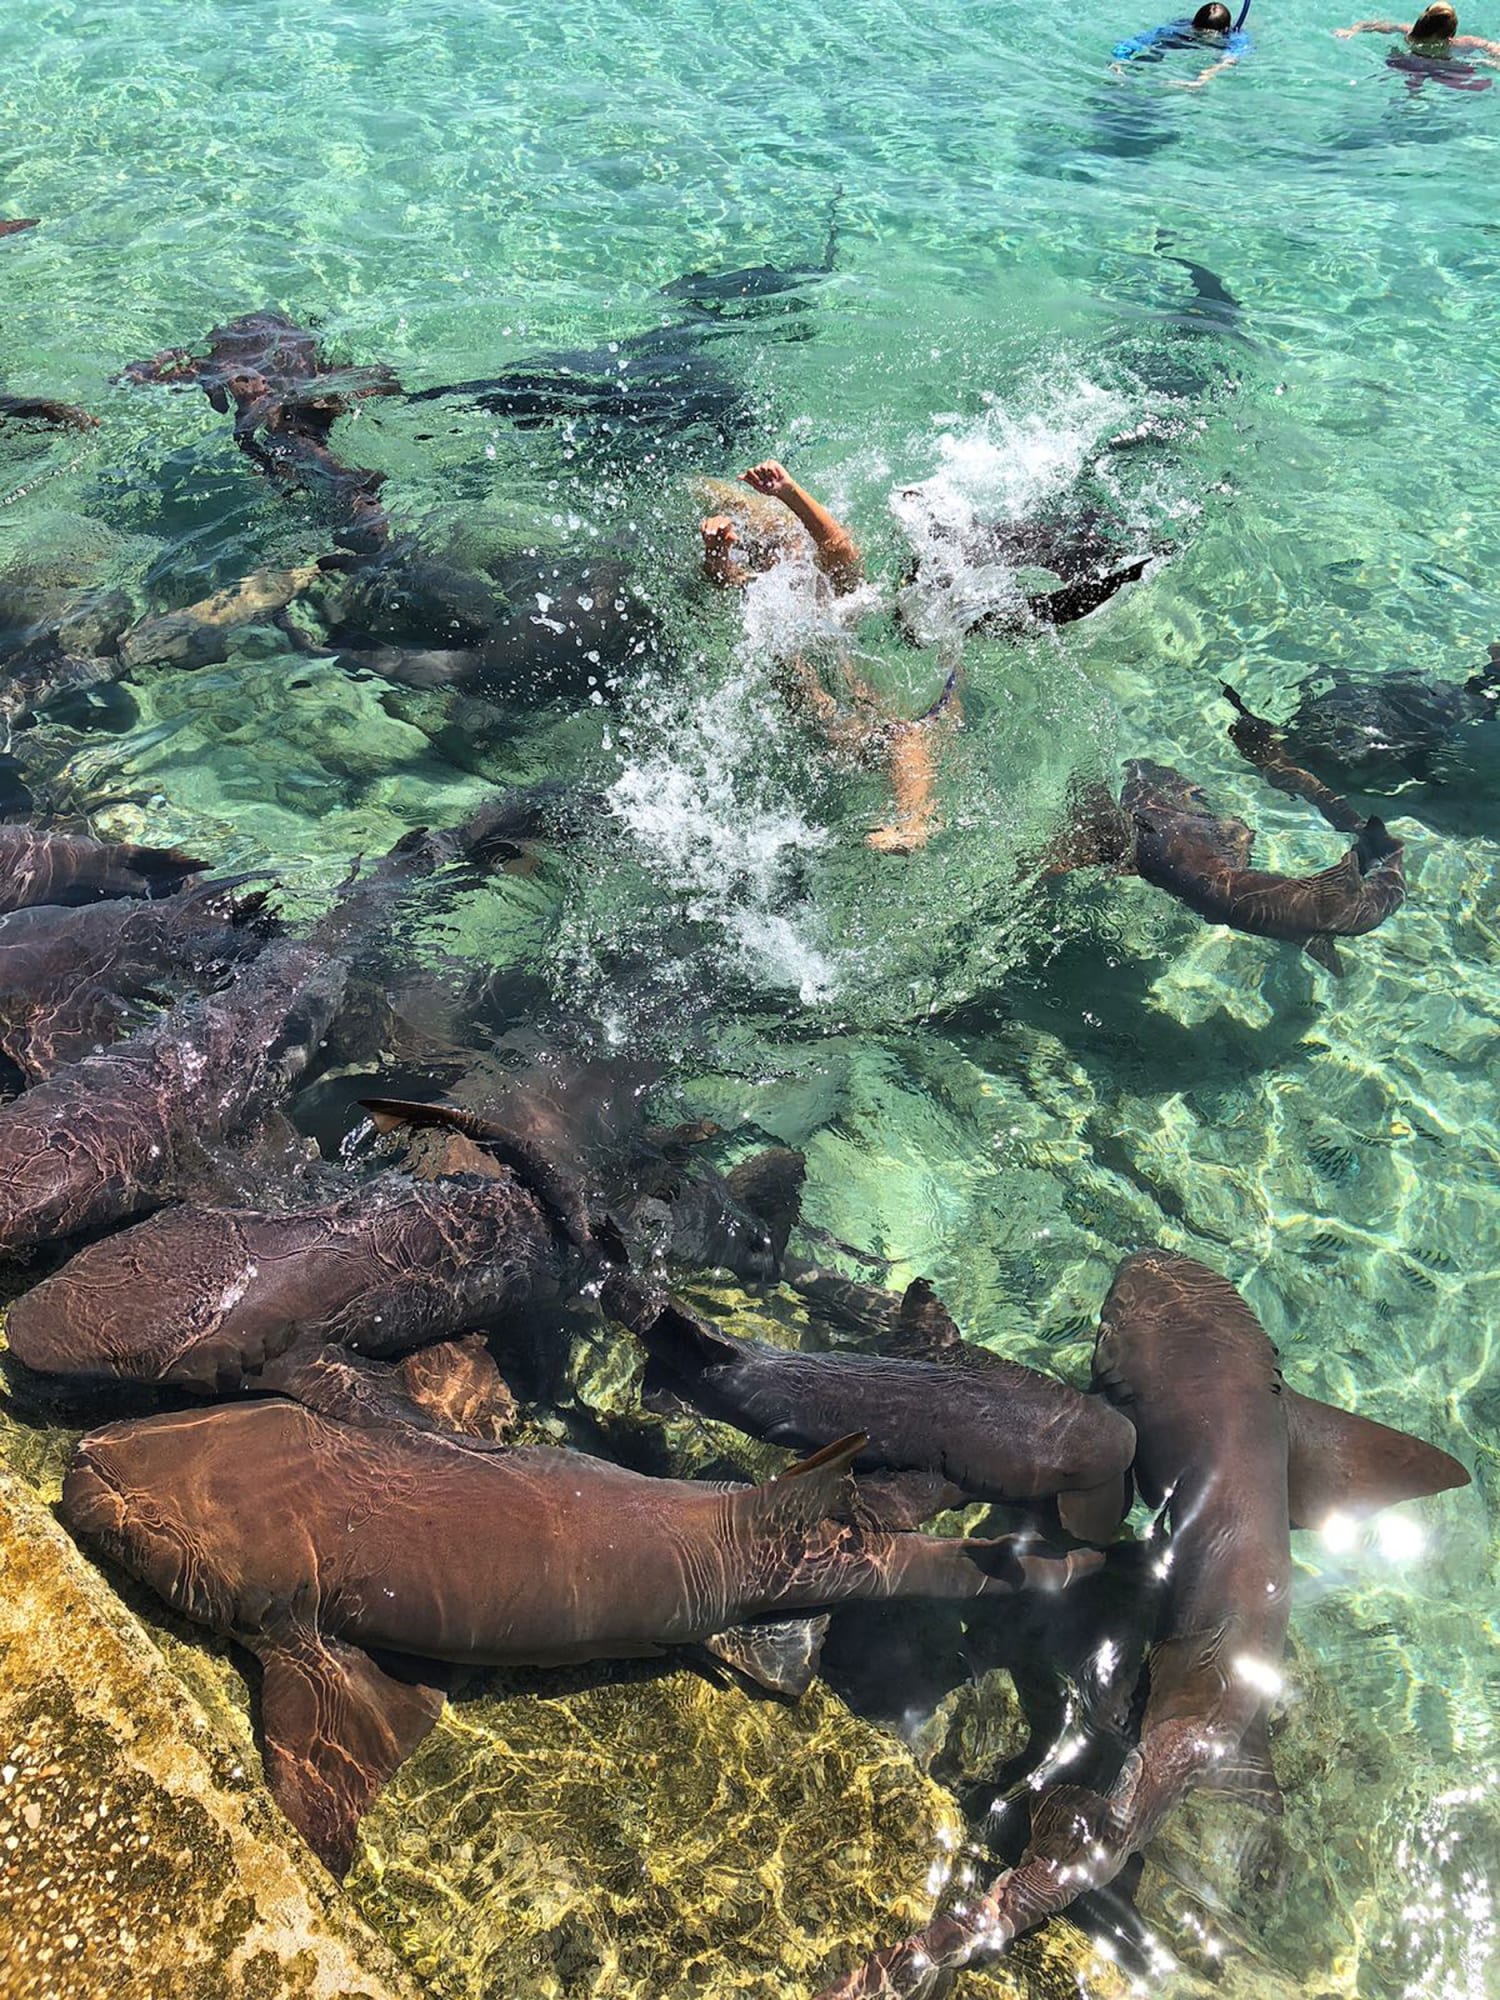 Shark attacks California Instagram model in Bahamas